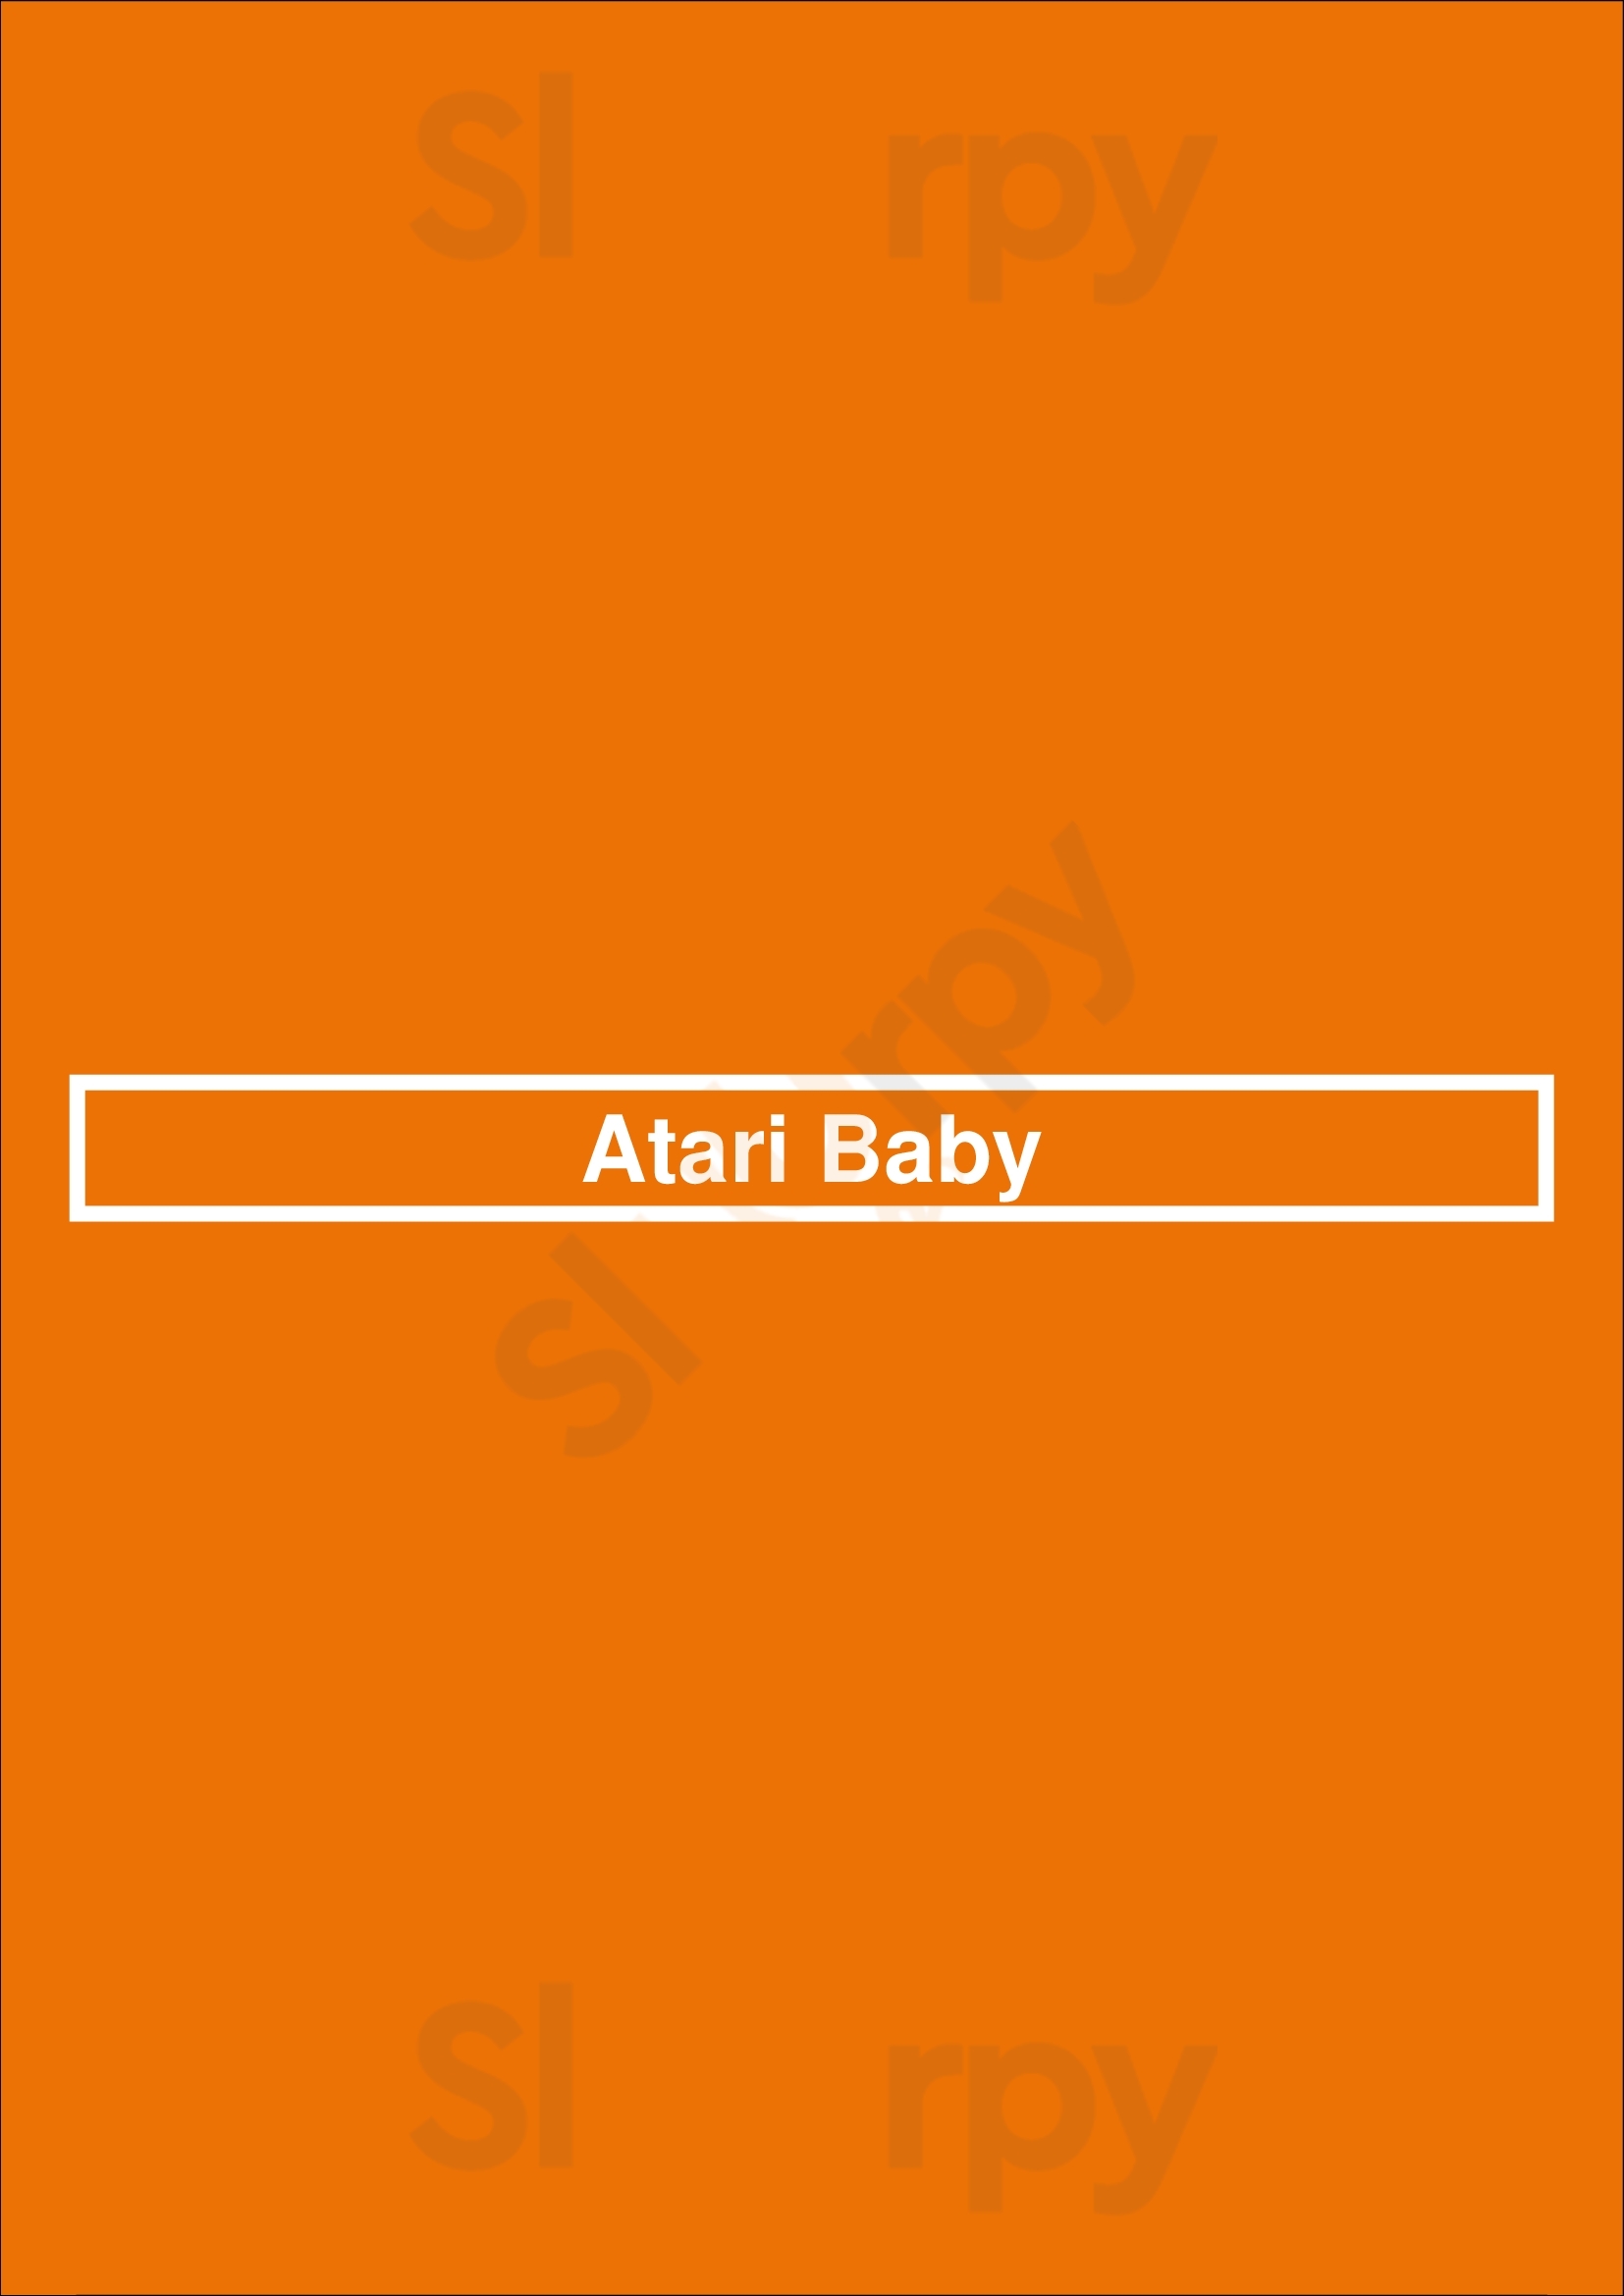 Atari Baby Lisboa Menu - 1